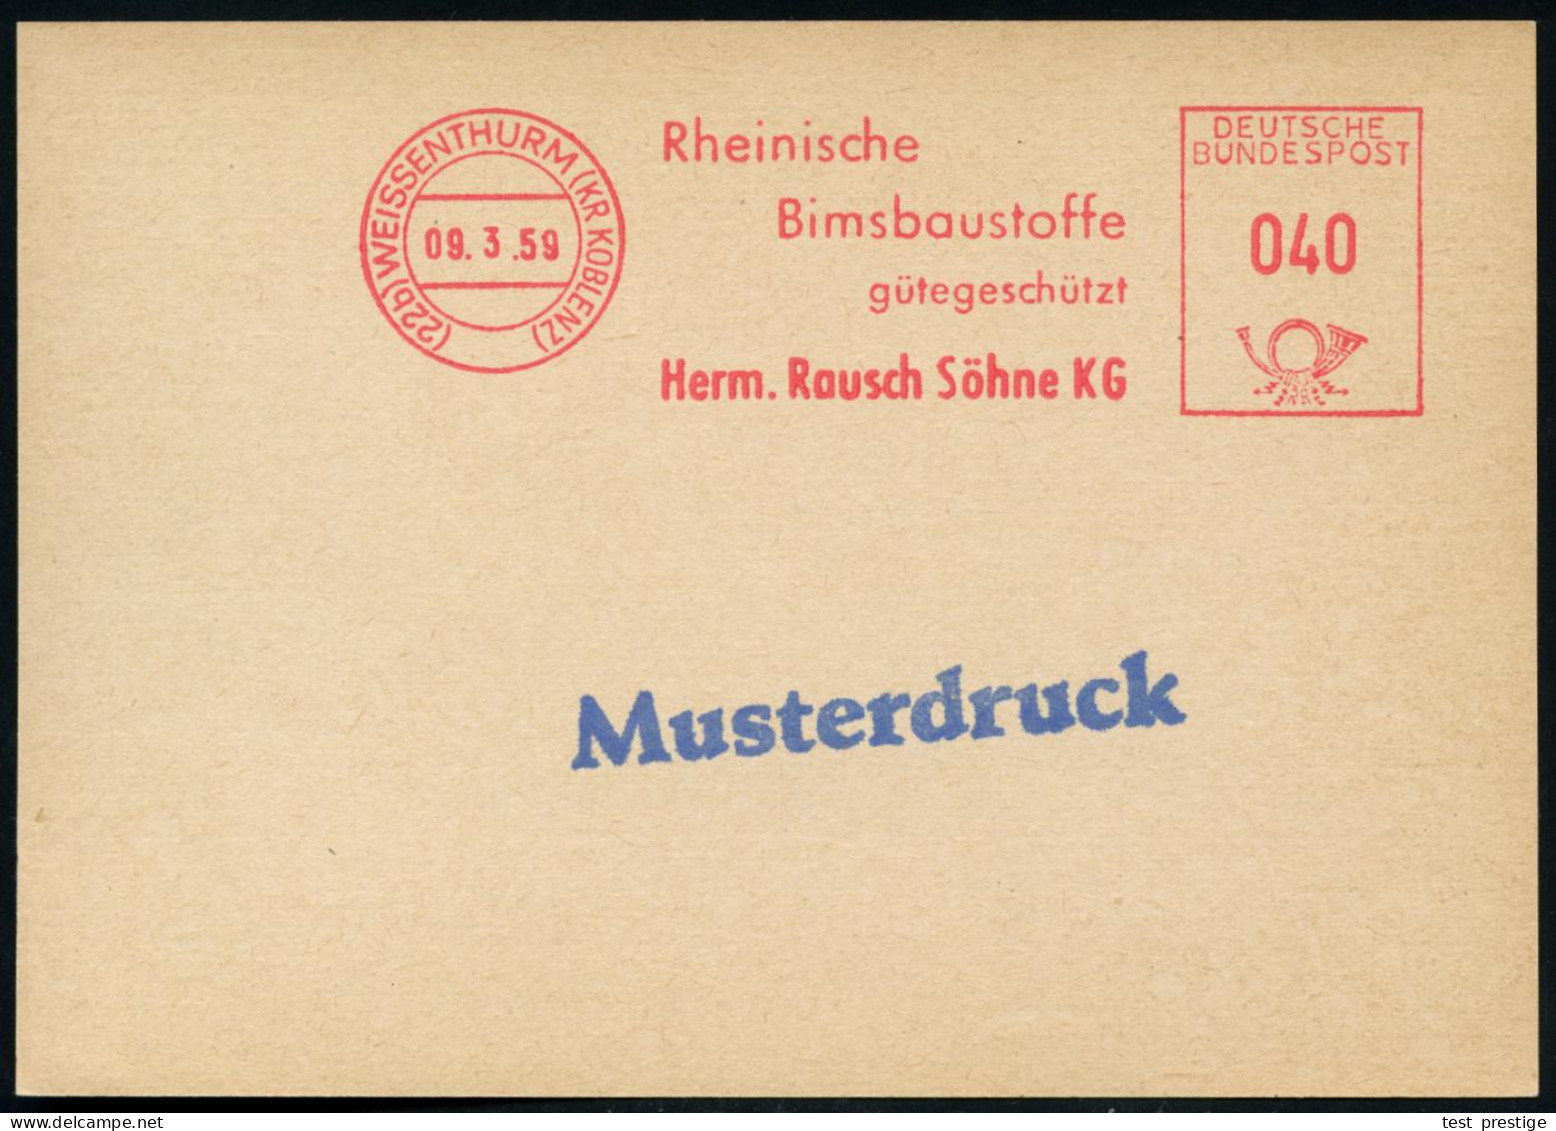 (22b) WEISSENTHURM (KR KOBLENZ)/ Rhein./ Bimsbaustoffe/ Gütegeschütz/ Herm.Rausch Söhne KG 1959 (9.3.) AFS 040 Pf. Franc - Química